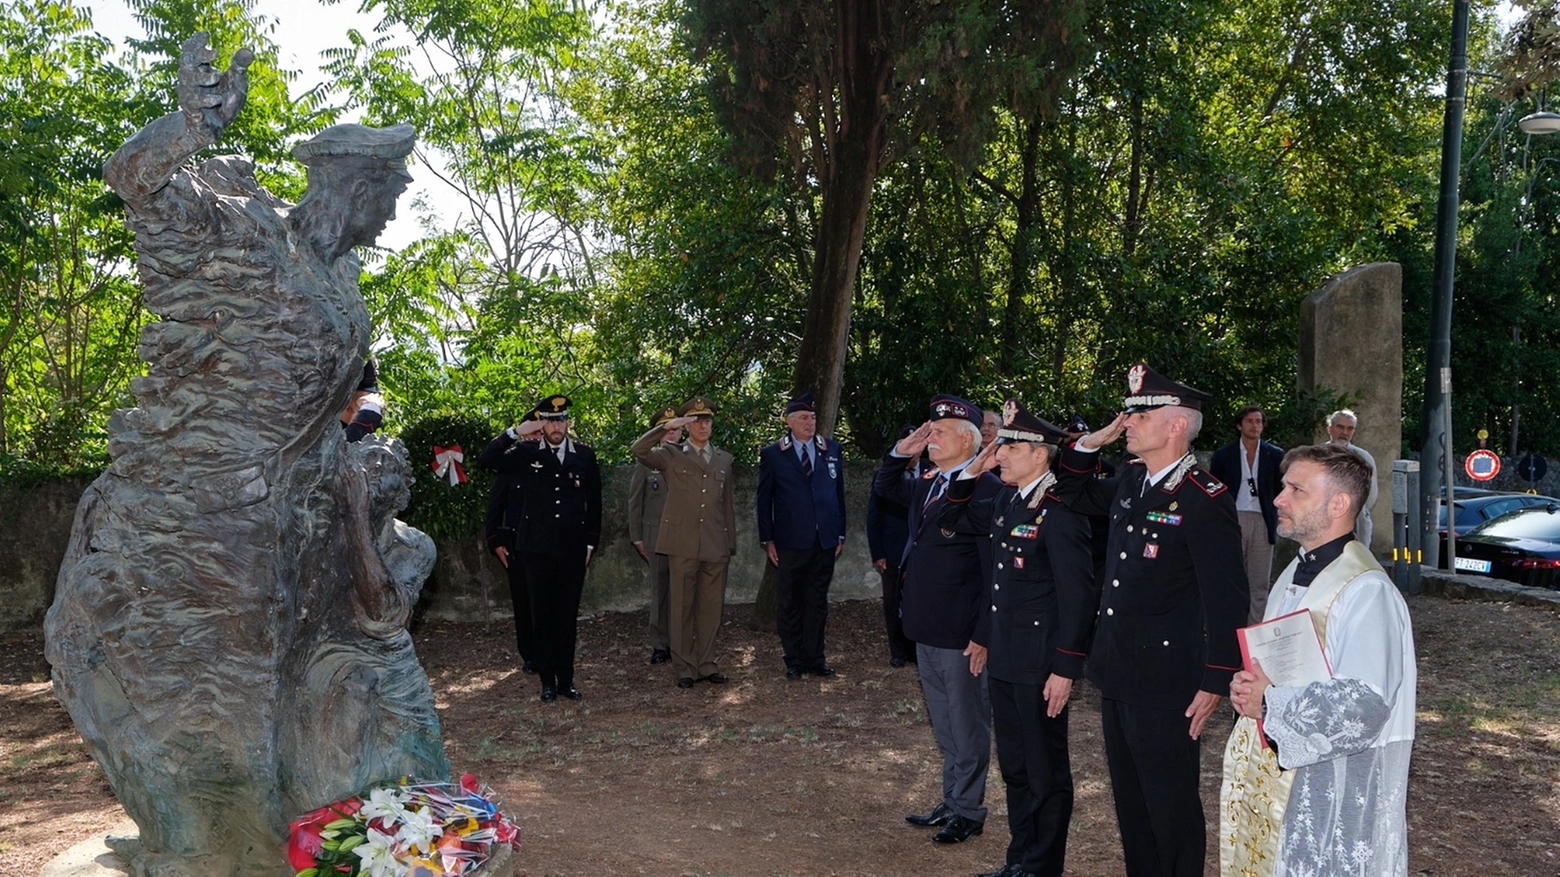 Il saluto militare all'eroe di Polidoro nella commemorazione di stamani